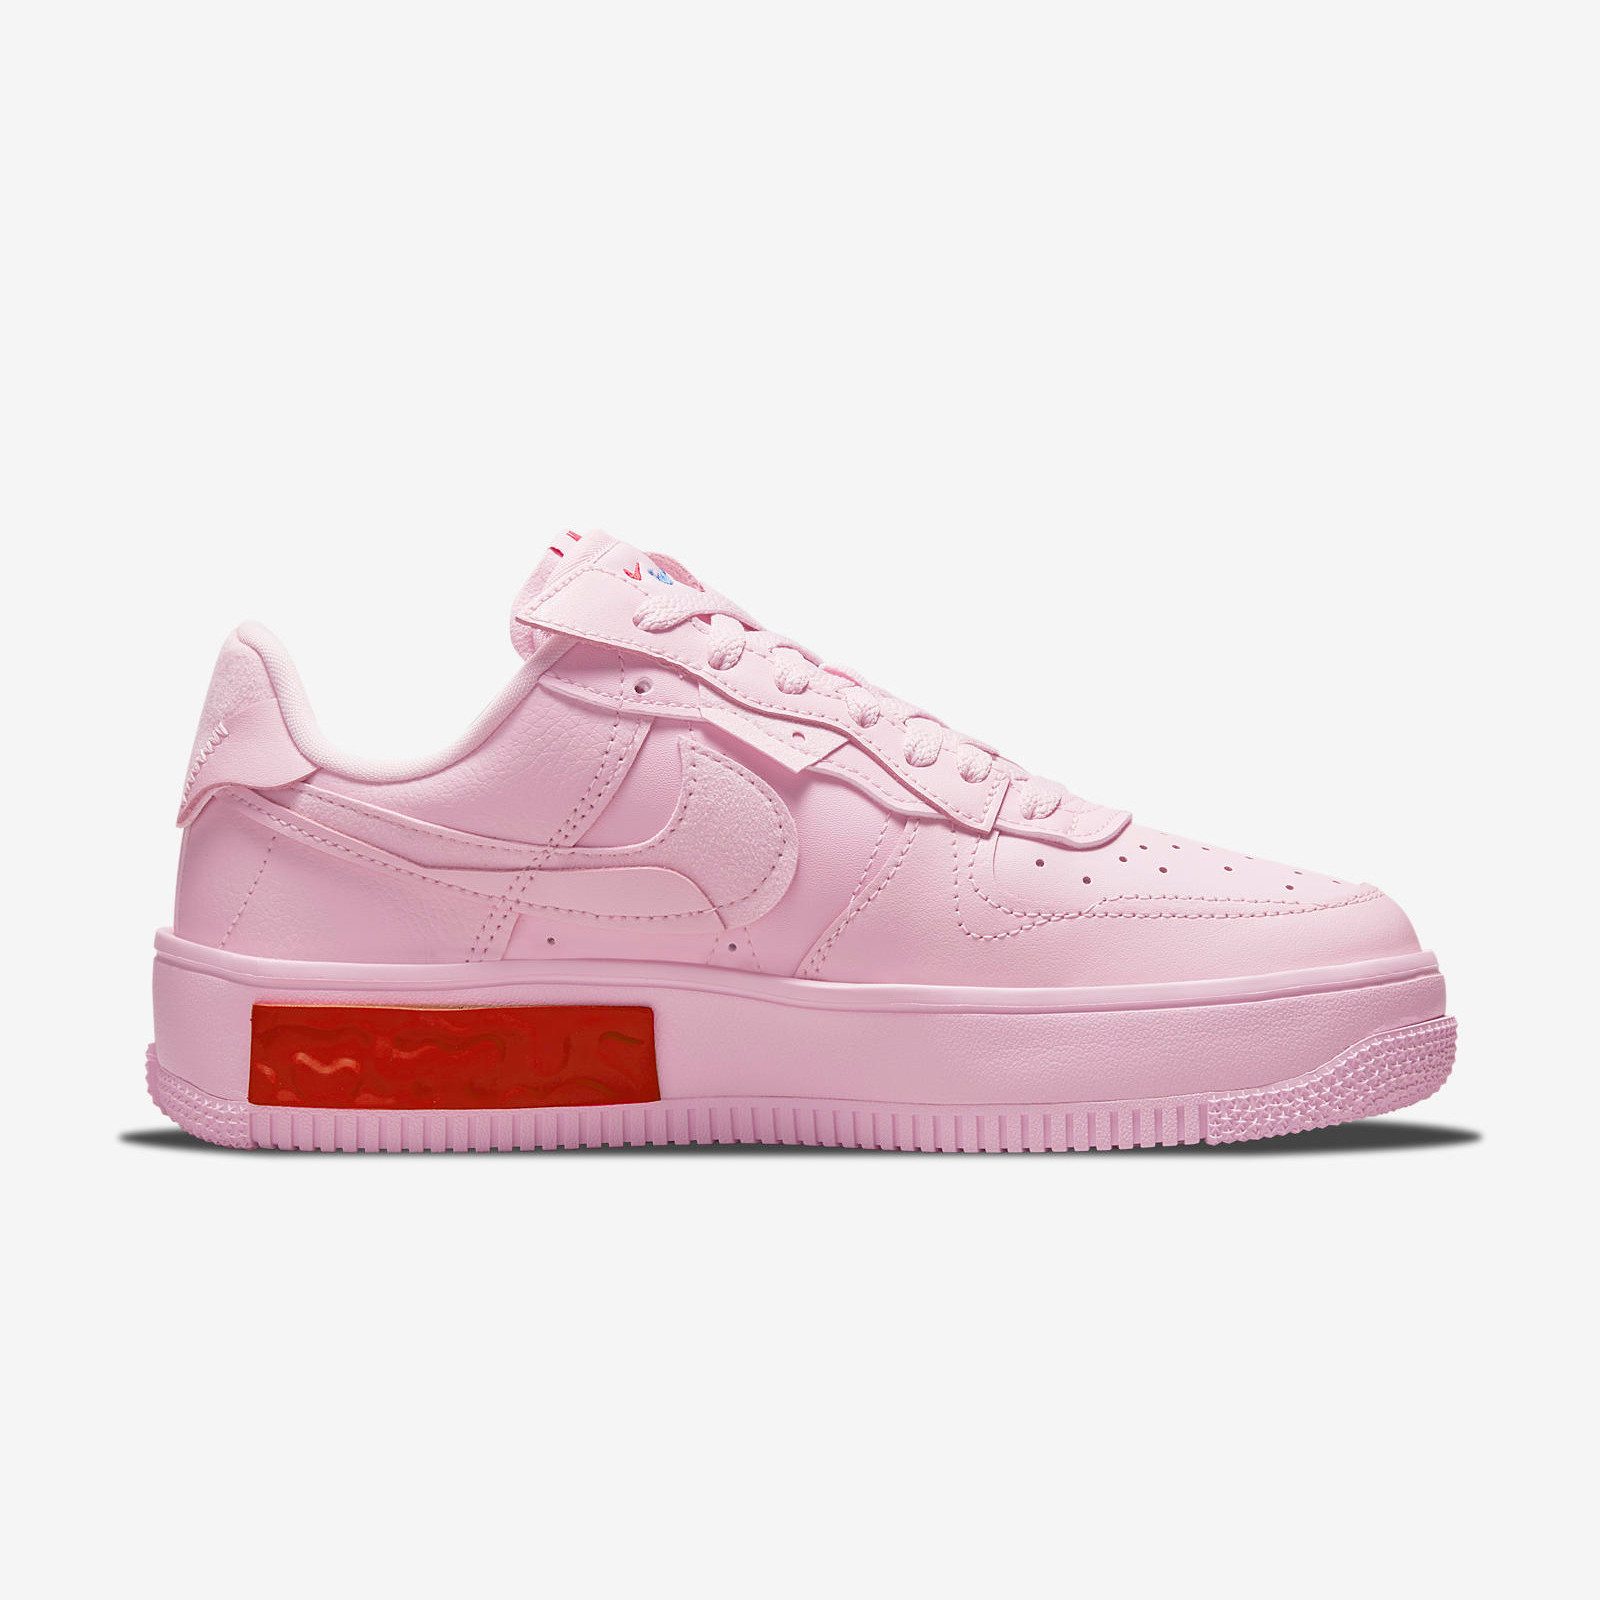 Nike Air Force 1
Fontanka
« Foam Pink »